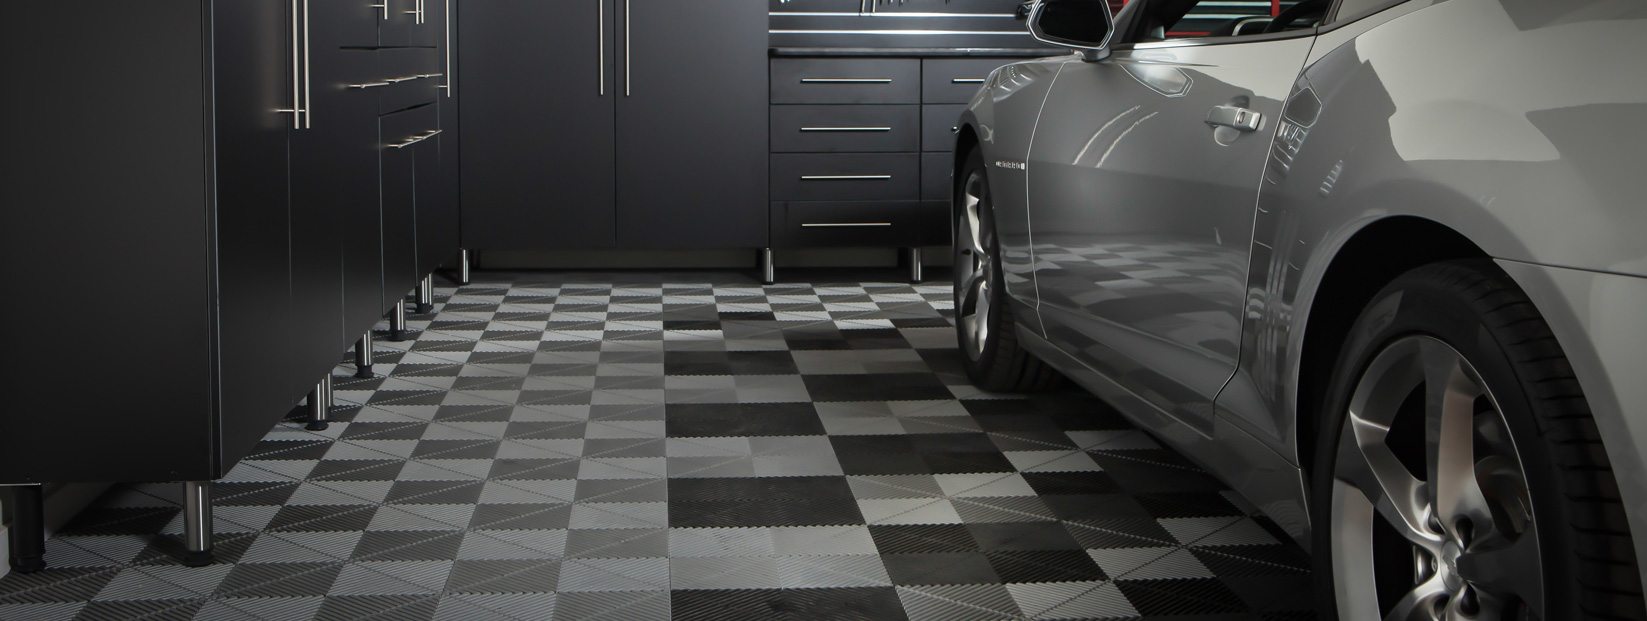 Garage Floor Tiles Location